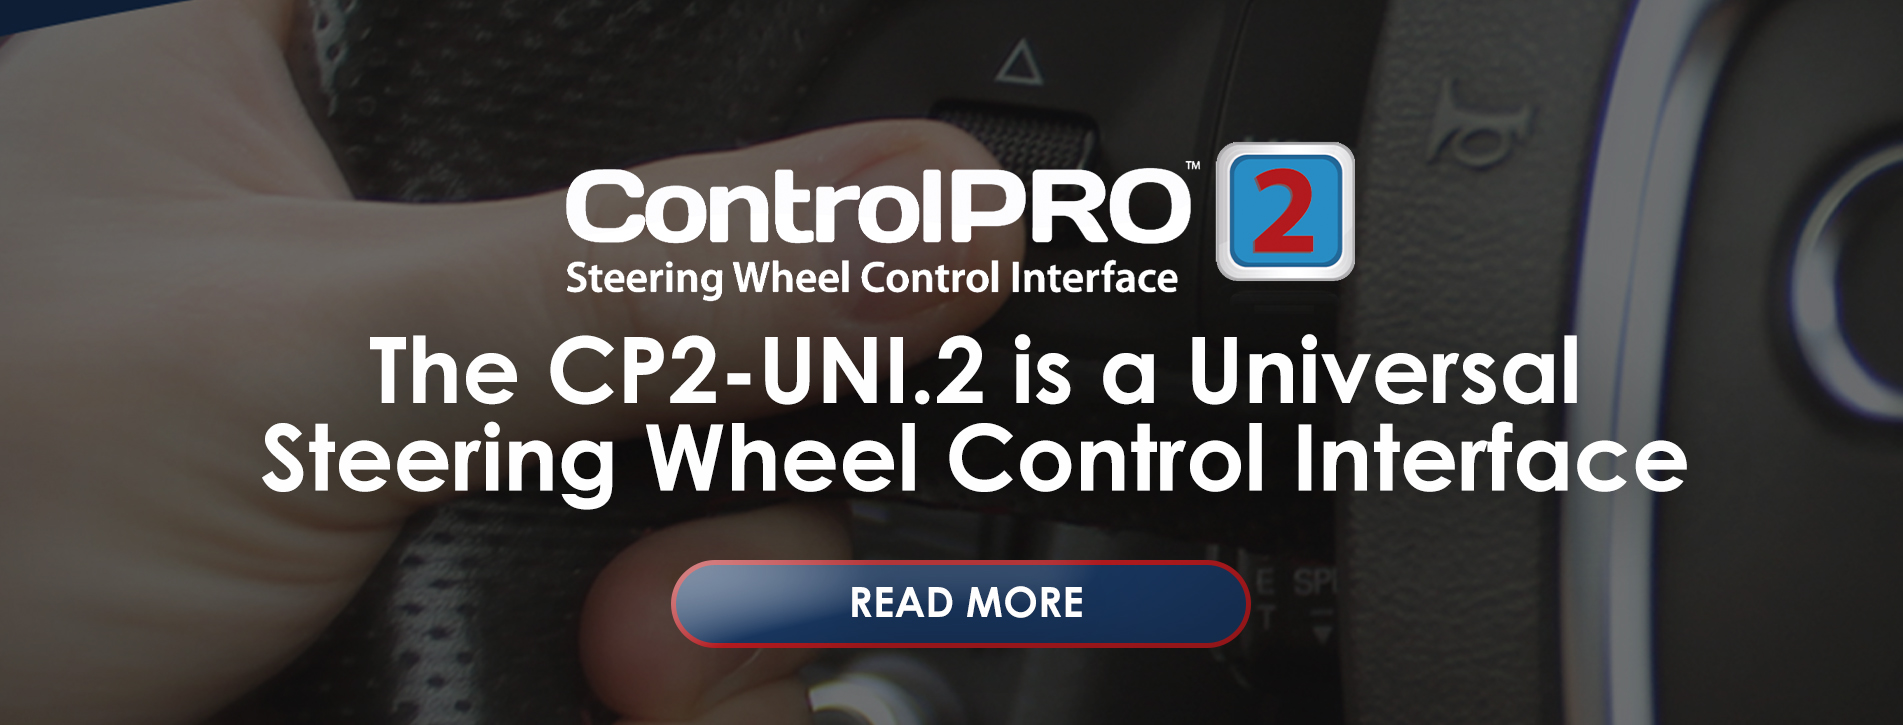 CP2-UNI.2_main-header